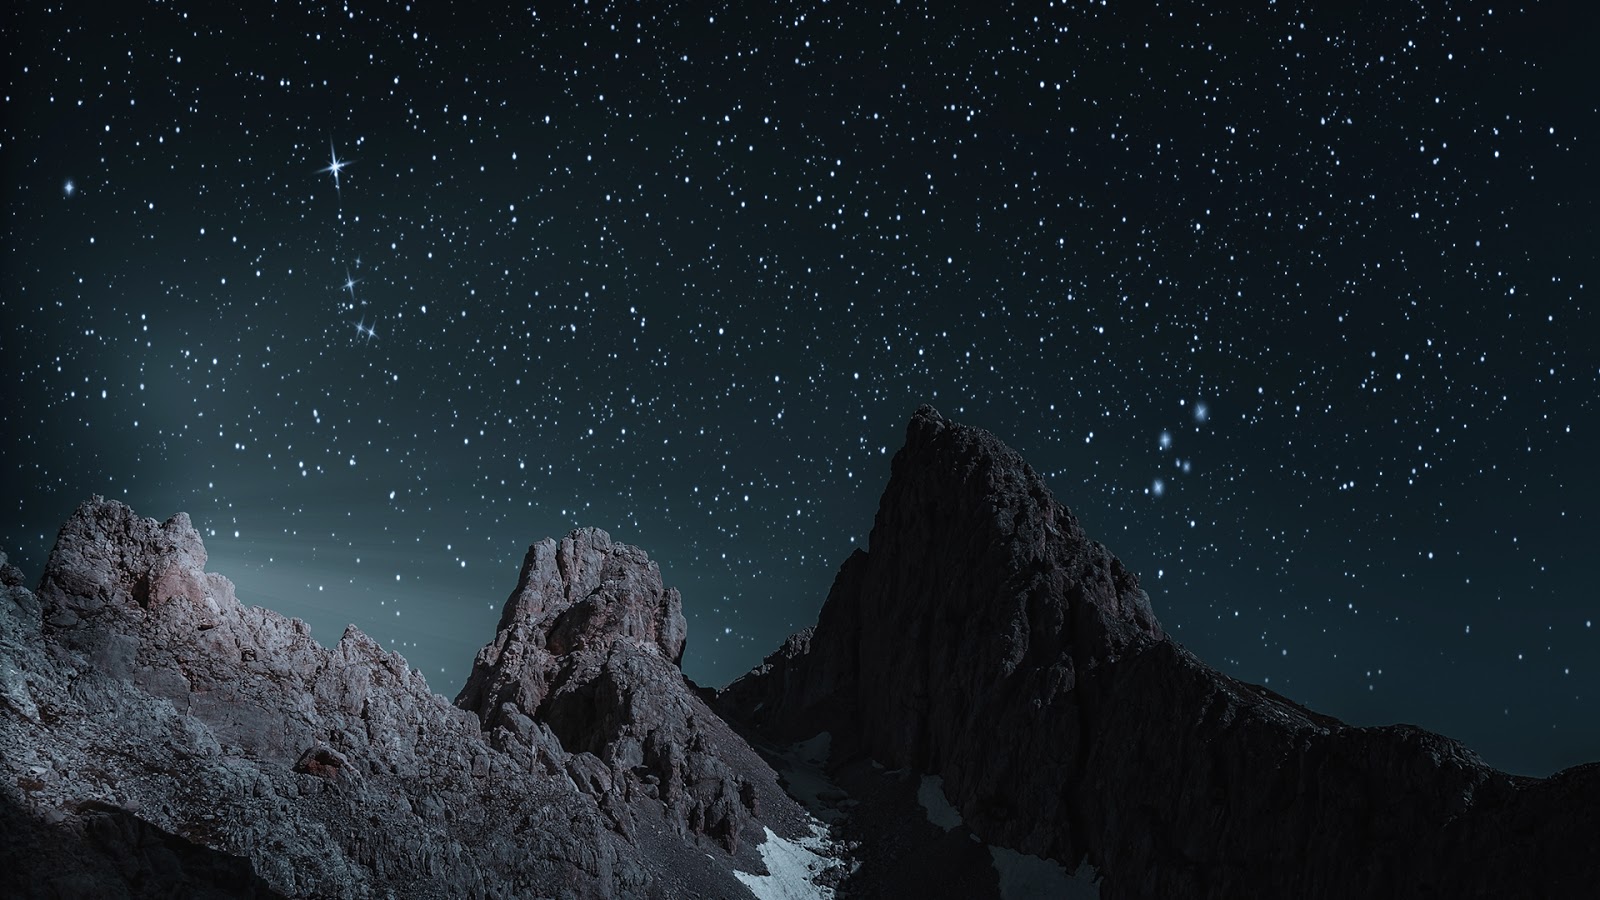 night sky wallpaper,sky,night,mountain,star,atmosphere